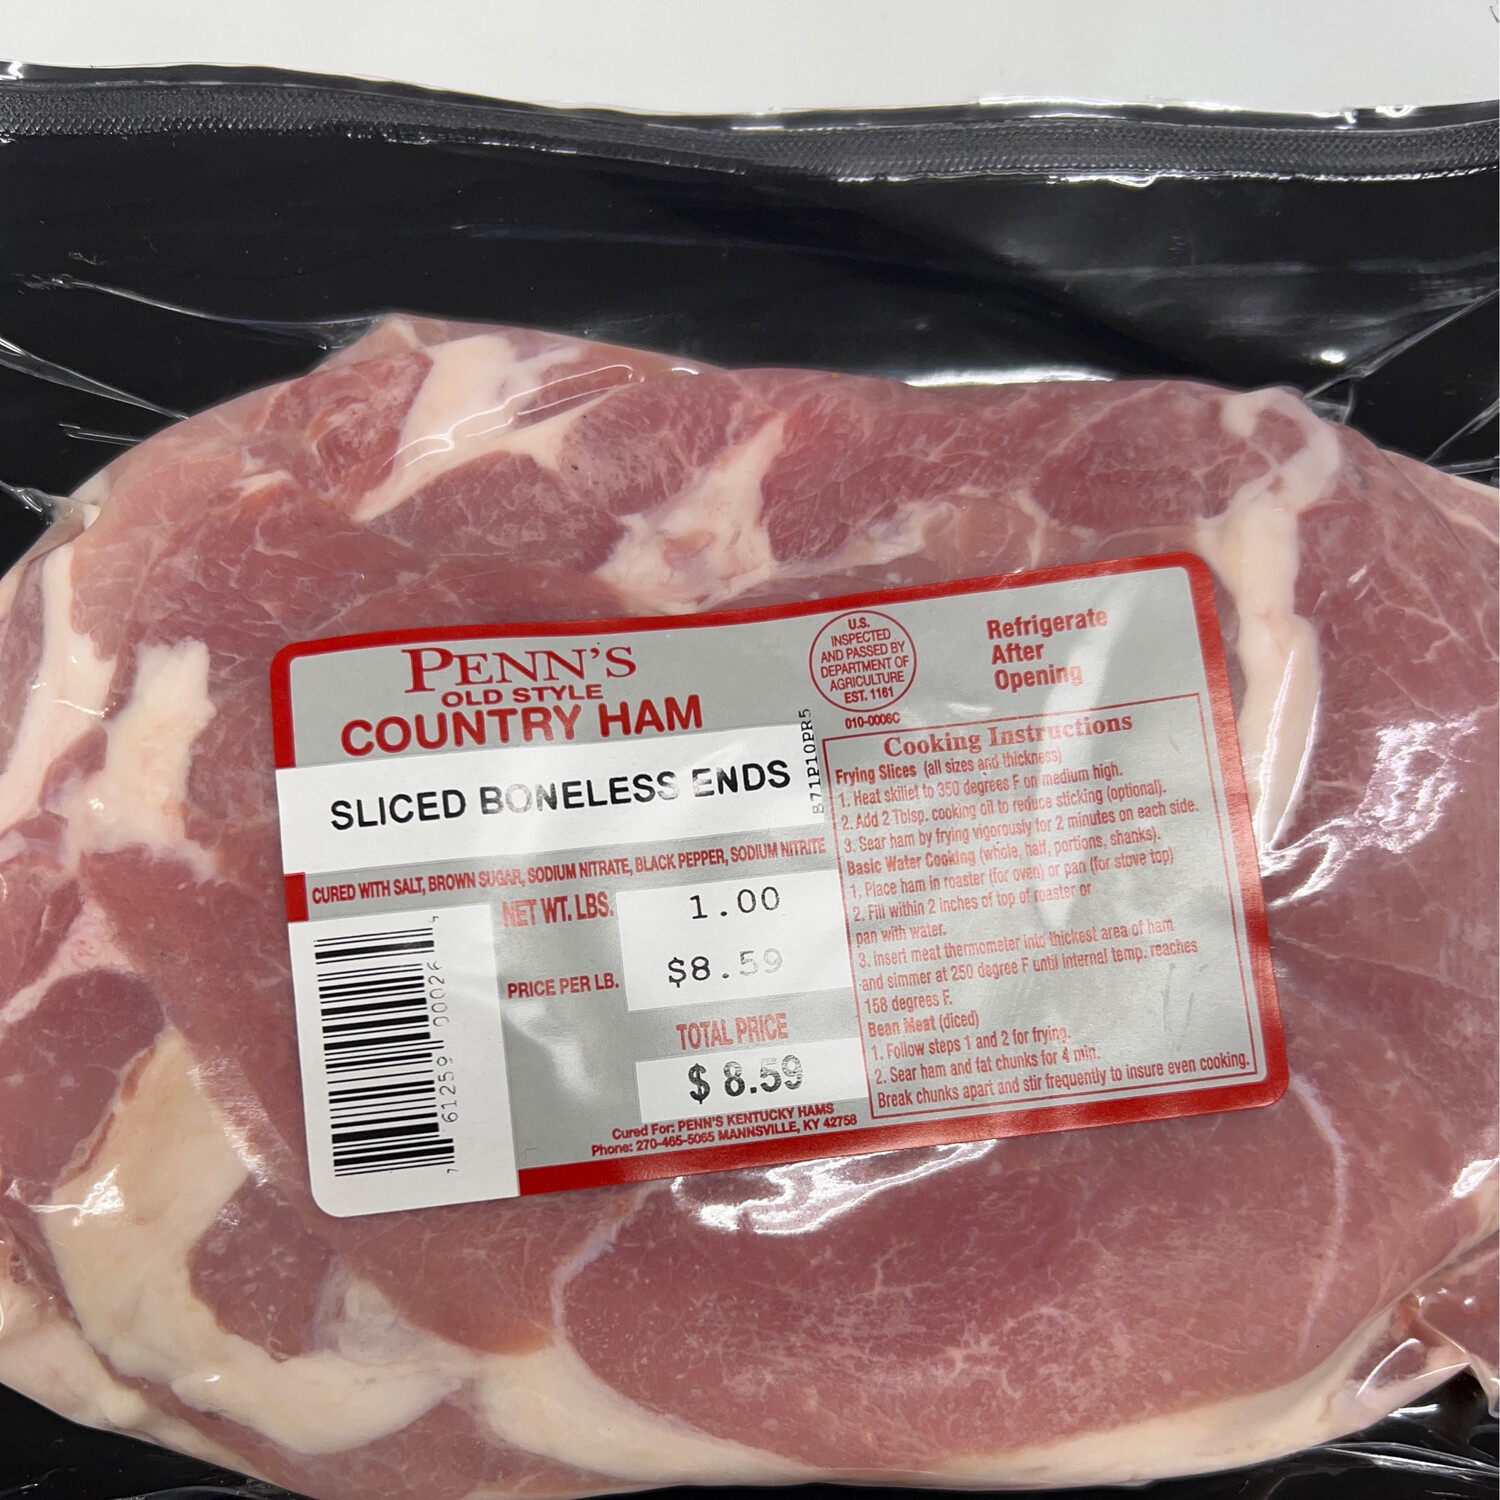 Penn's Sliced Bonless Ends Country Ham 16 oz